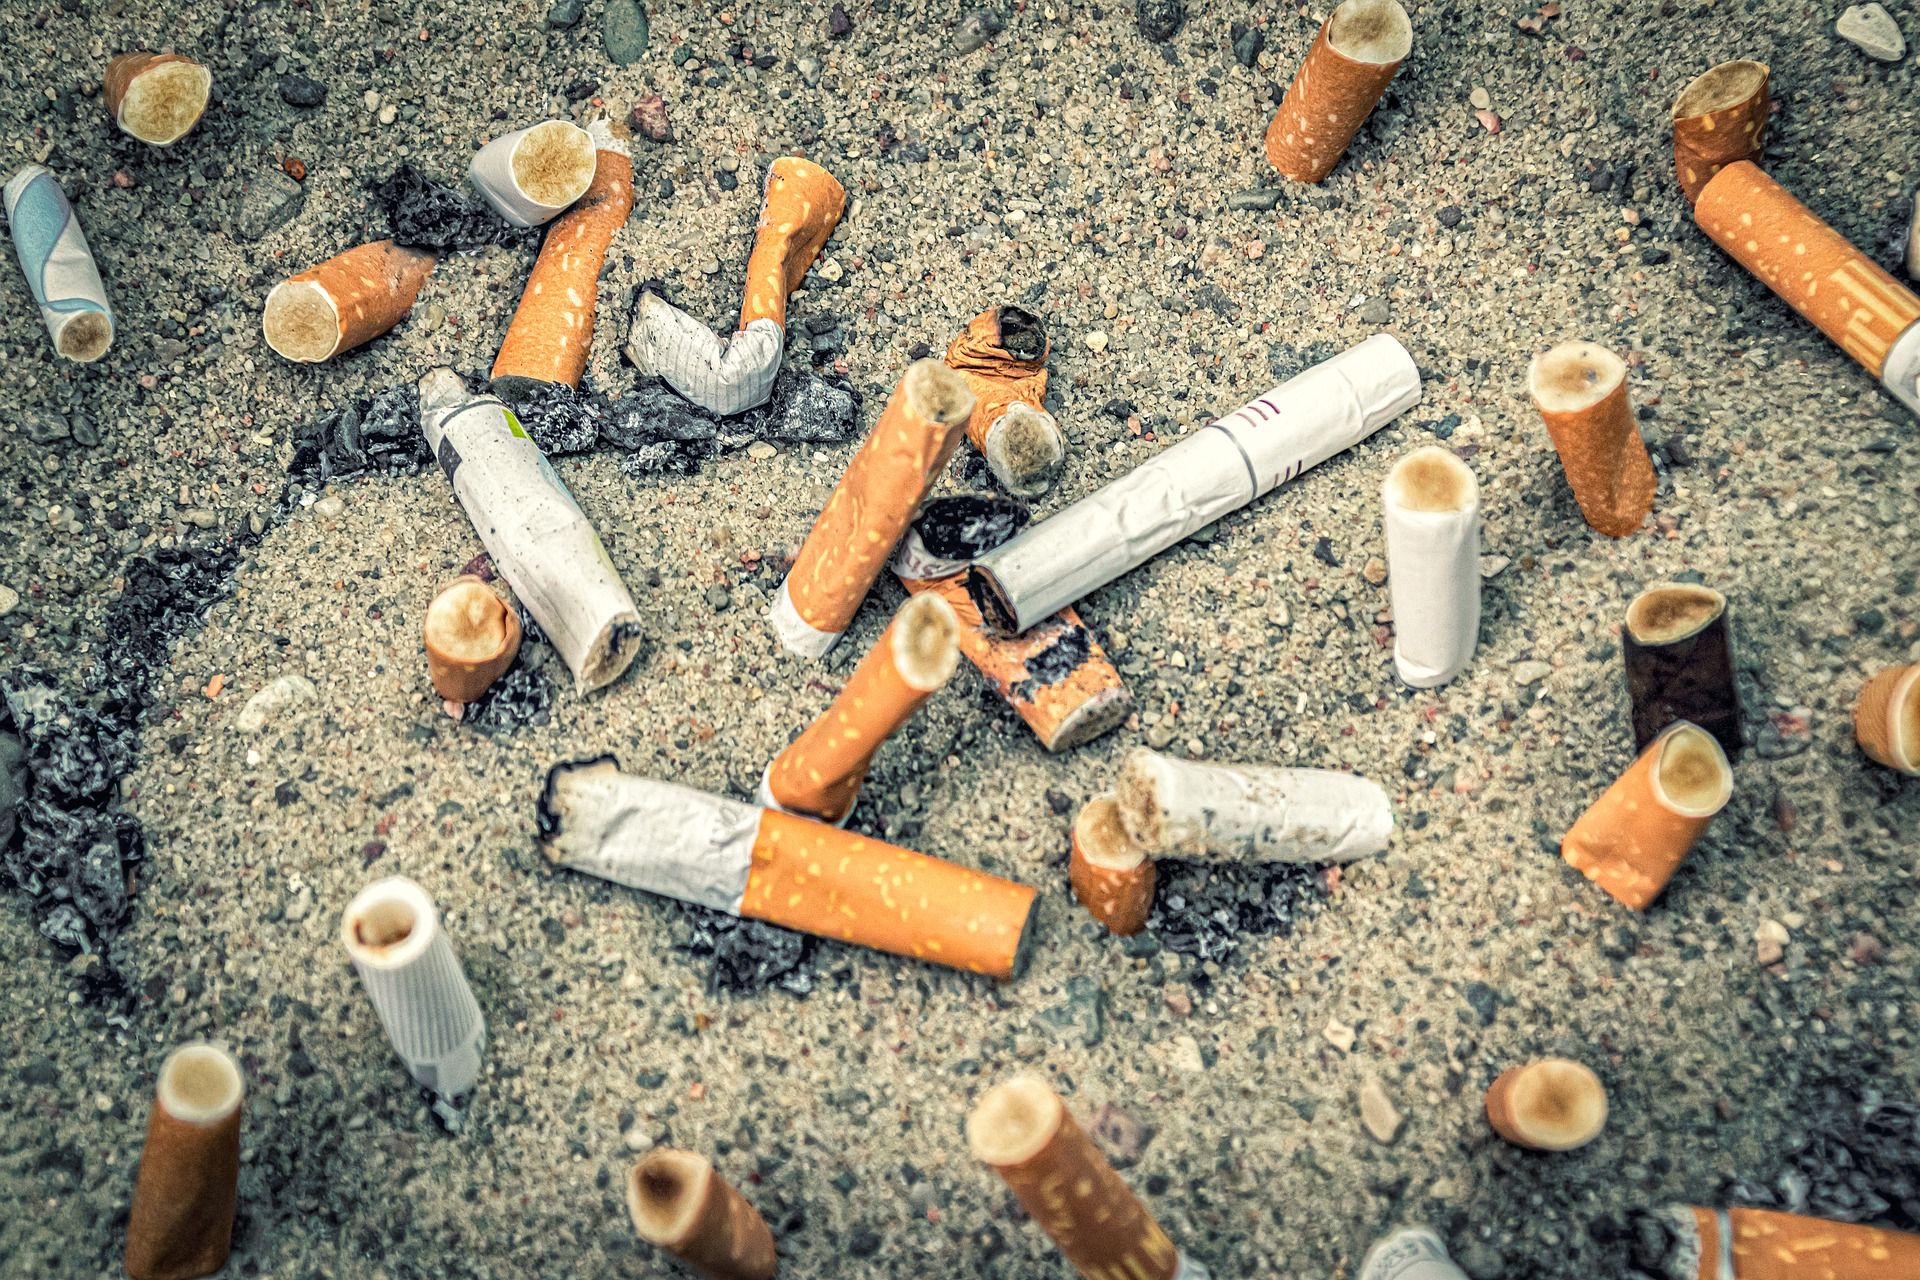 Más País-Verdes Equo propone prohibir fumar en las playas / Foto: analogicus - Pixabay